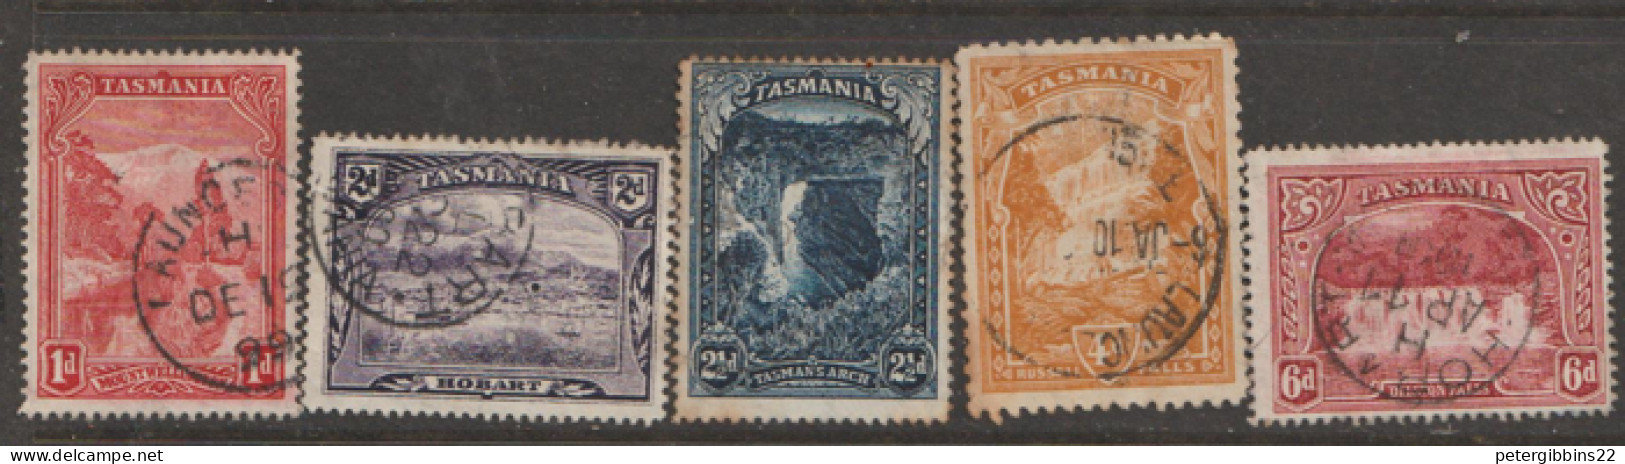 Tasmania  1899  Various Values    Fine Used - Gebraucht